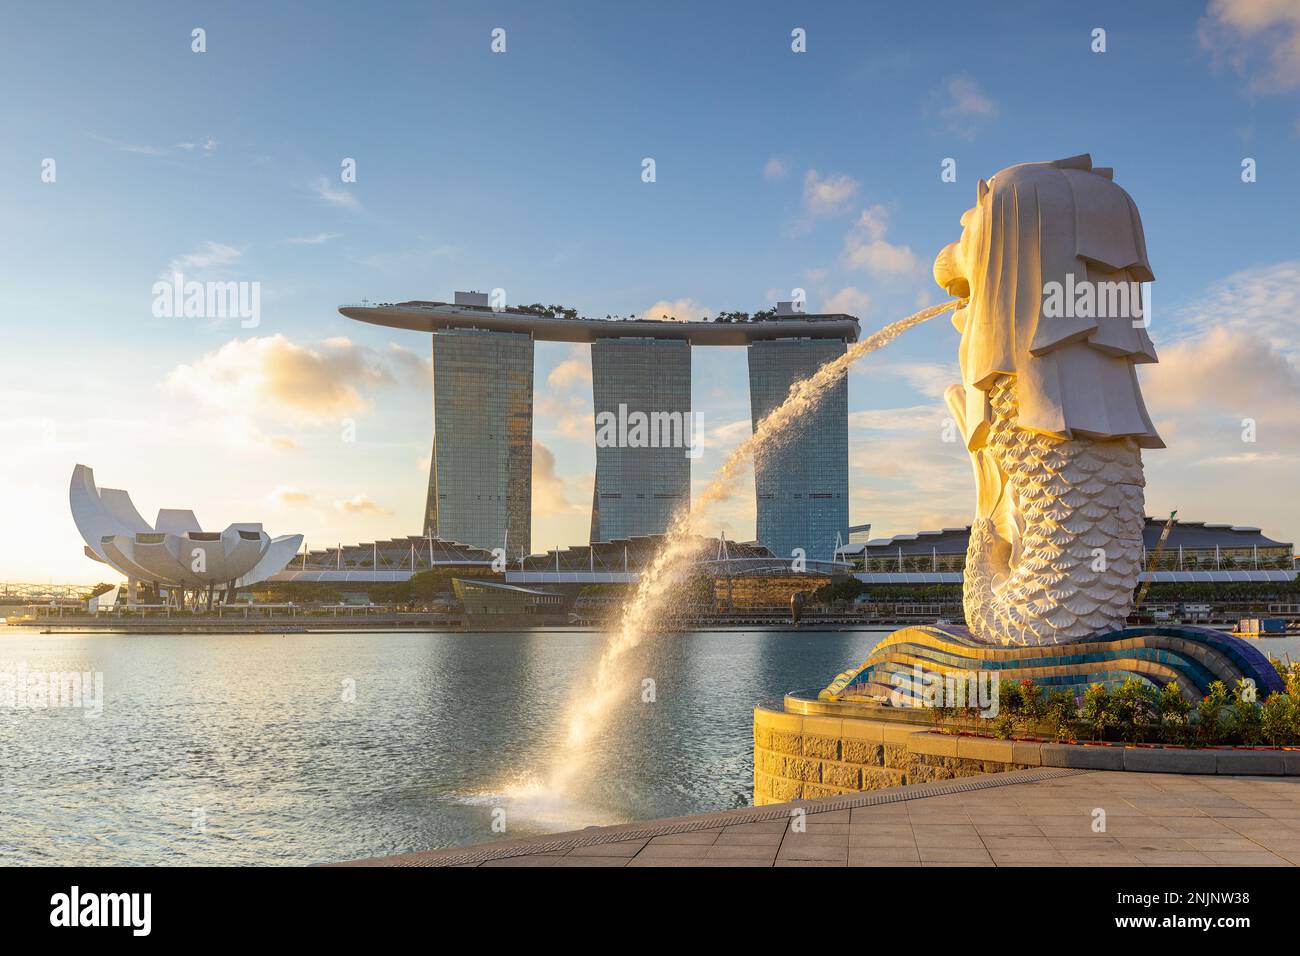 singapour, singapour - 11 juin 2019 : lever du soleil à la marina de singapour avec le bâtiment emblématique merlion Banque D'Images